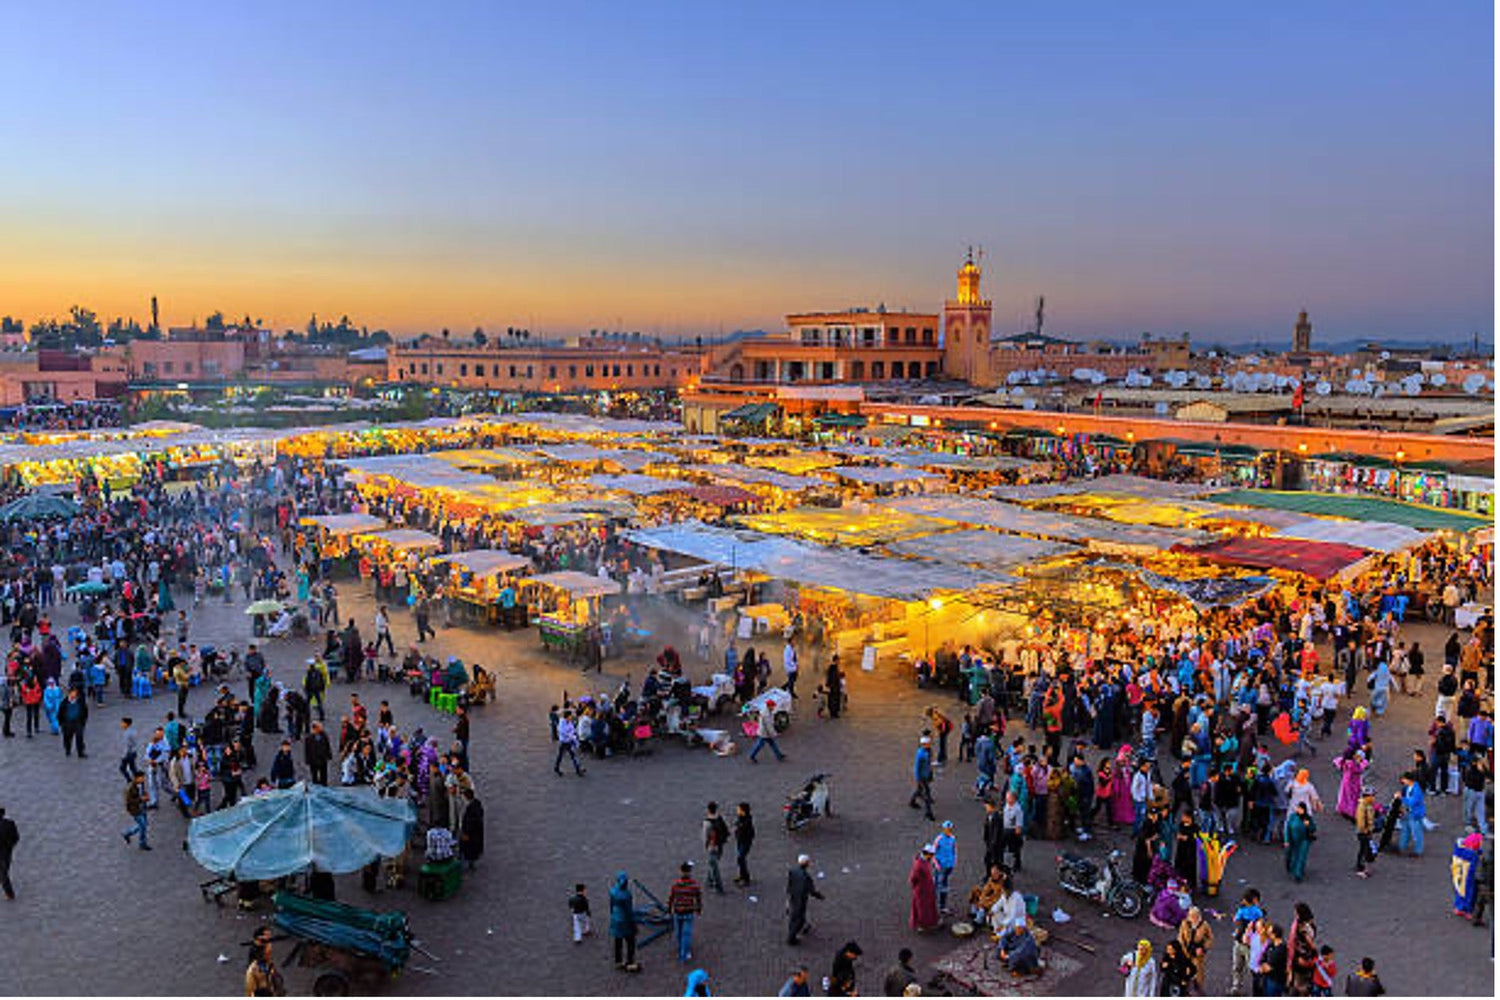 Morocco Holidays